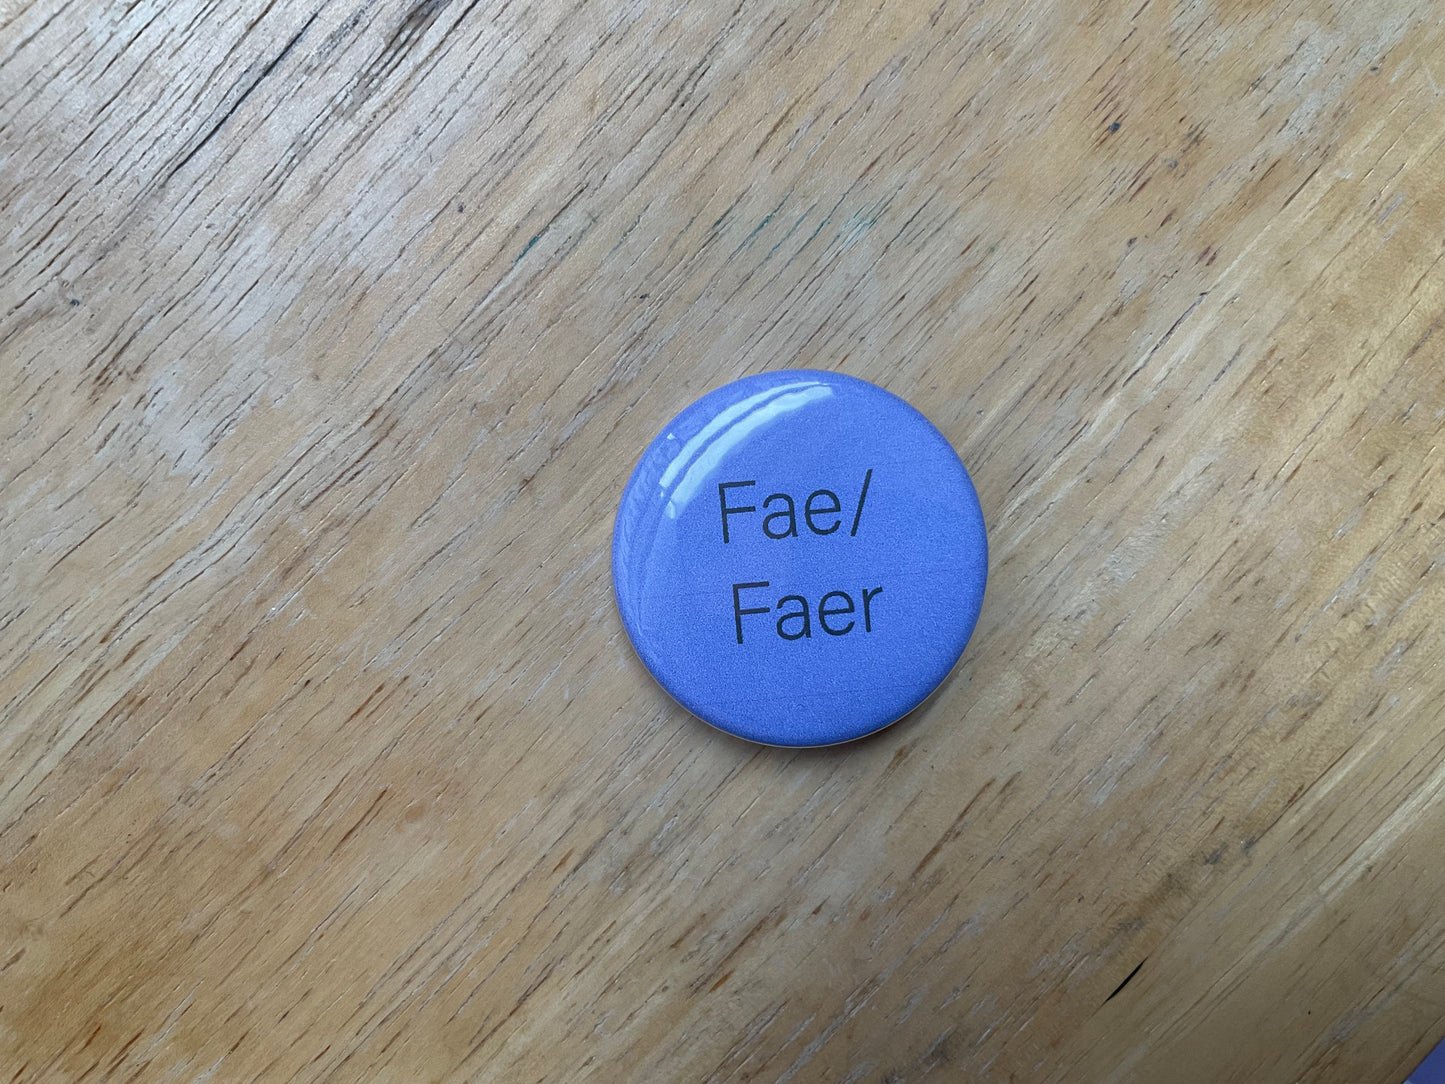 Pronoun pin fae/faer